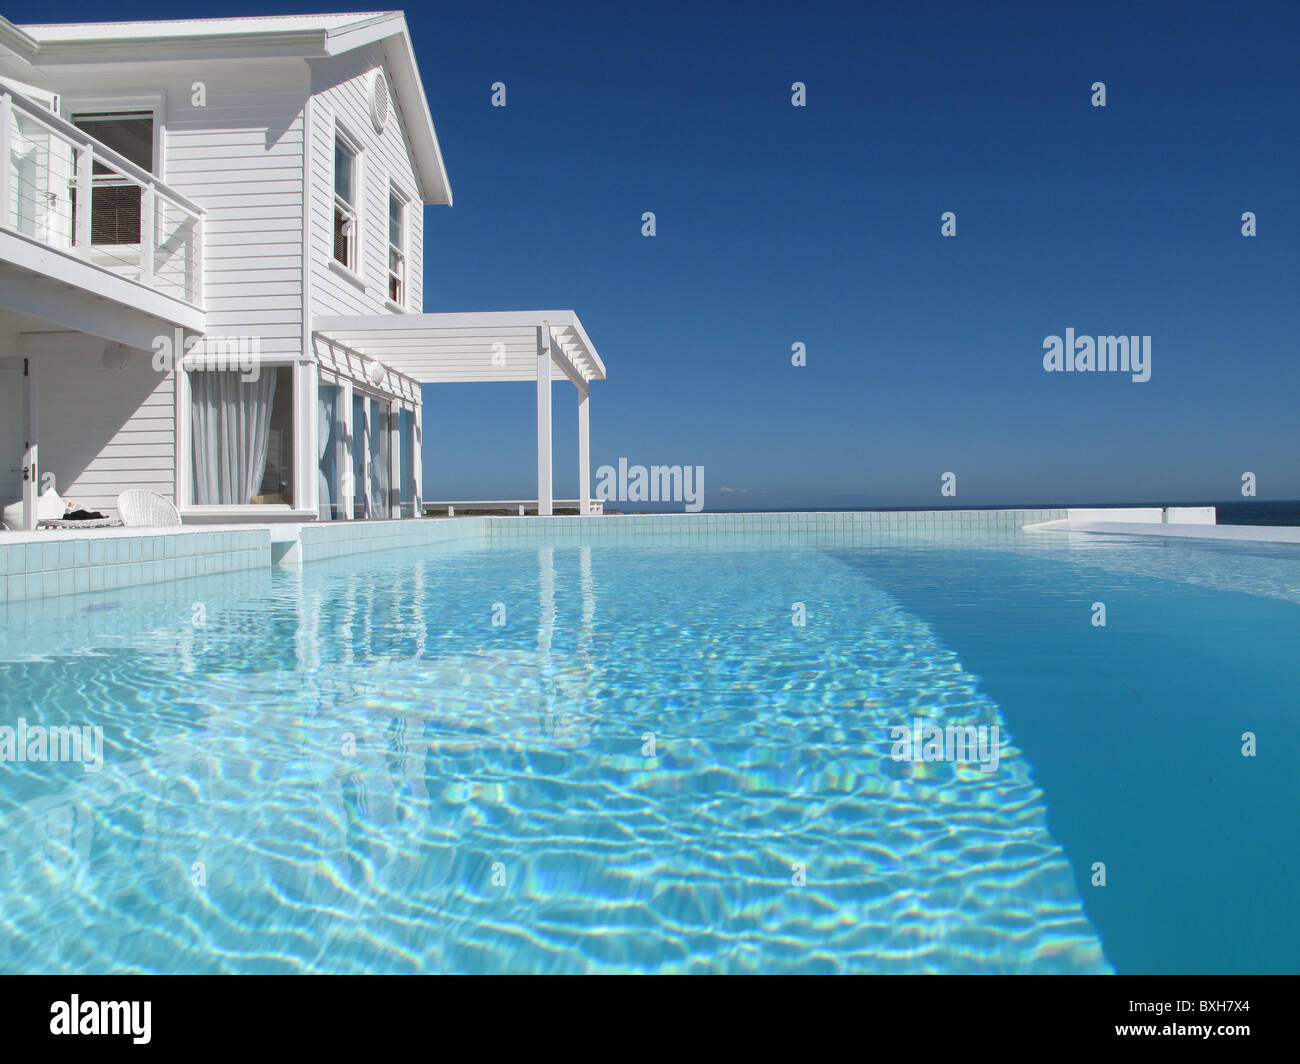 Maison front de mer en bois blanc vue de la piscine à débordement Banque D'Images